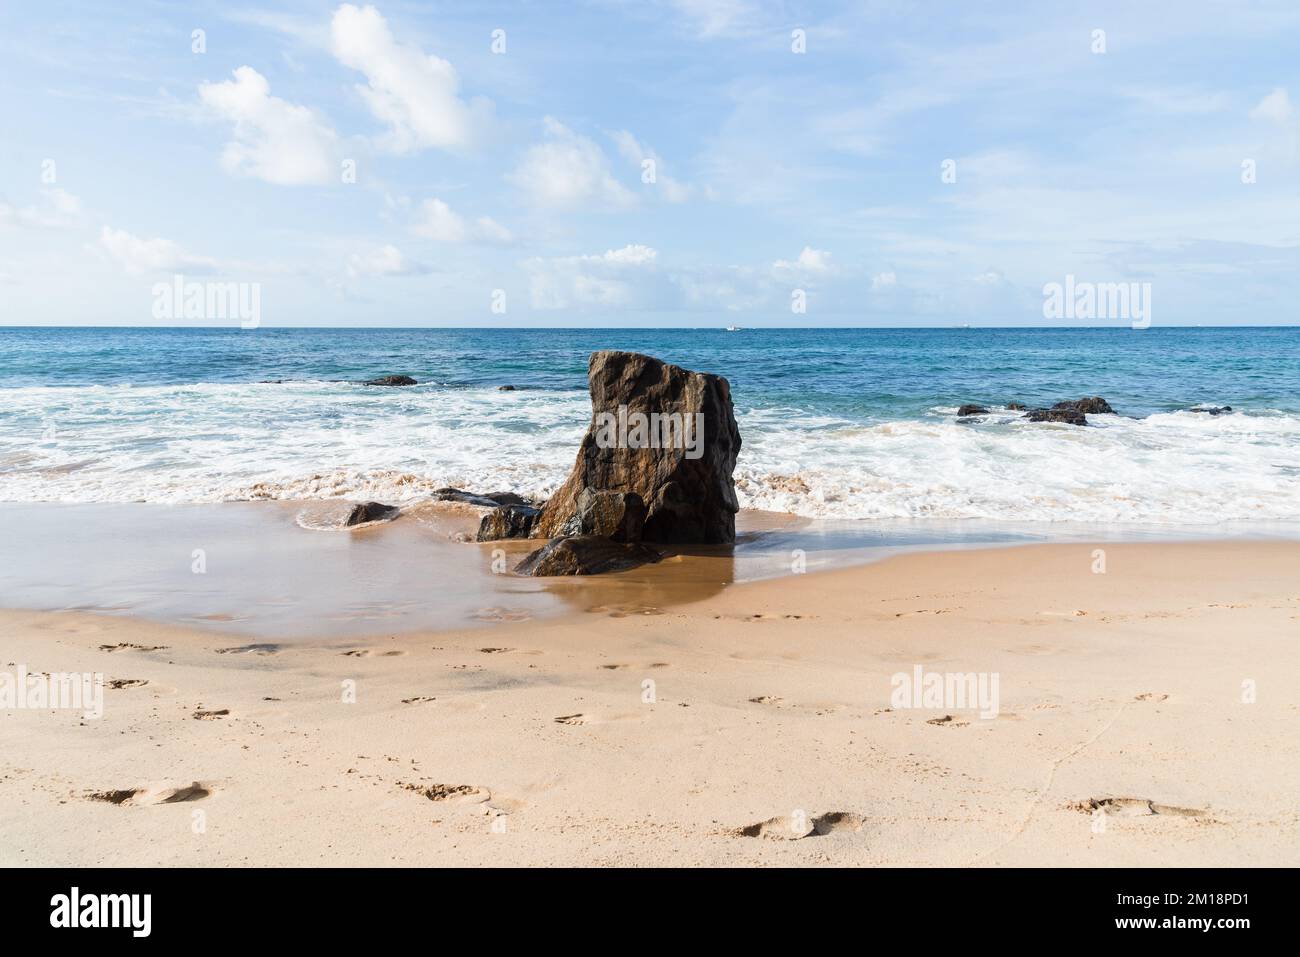 Während eines Vorhangs am Meer bricht eine Welle um einen Felsen. Farol da Barra Beach, Salvador, Brasilien. Stockfoto